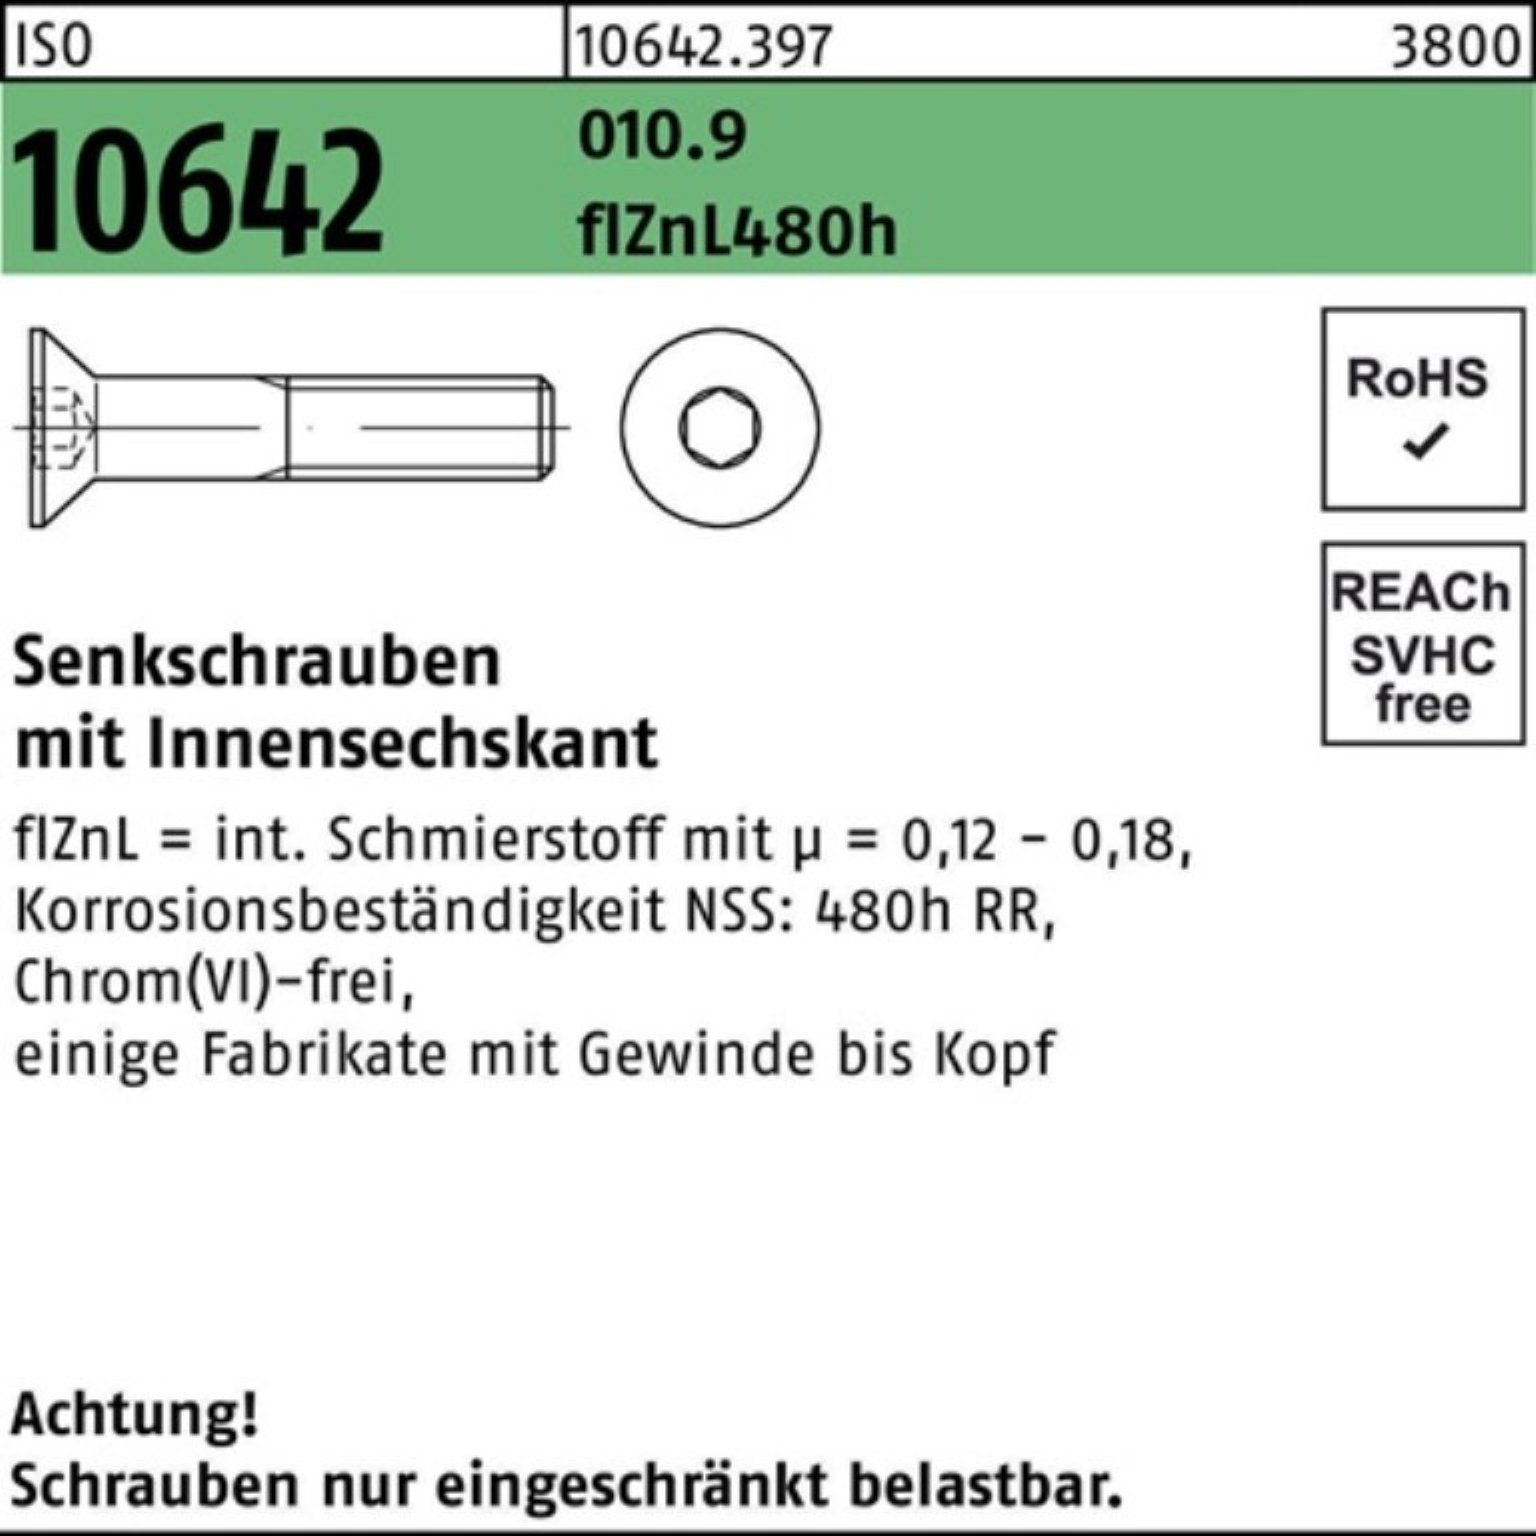 ISO 010.9 200er 480h zi M10x20 Pack Innen-6kt flZnL Senkschraube 10642 Reyher Senkschraube